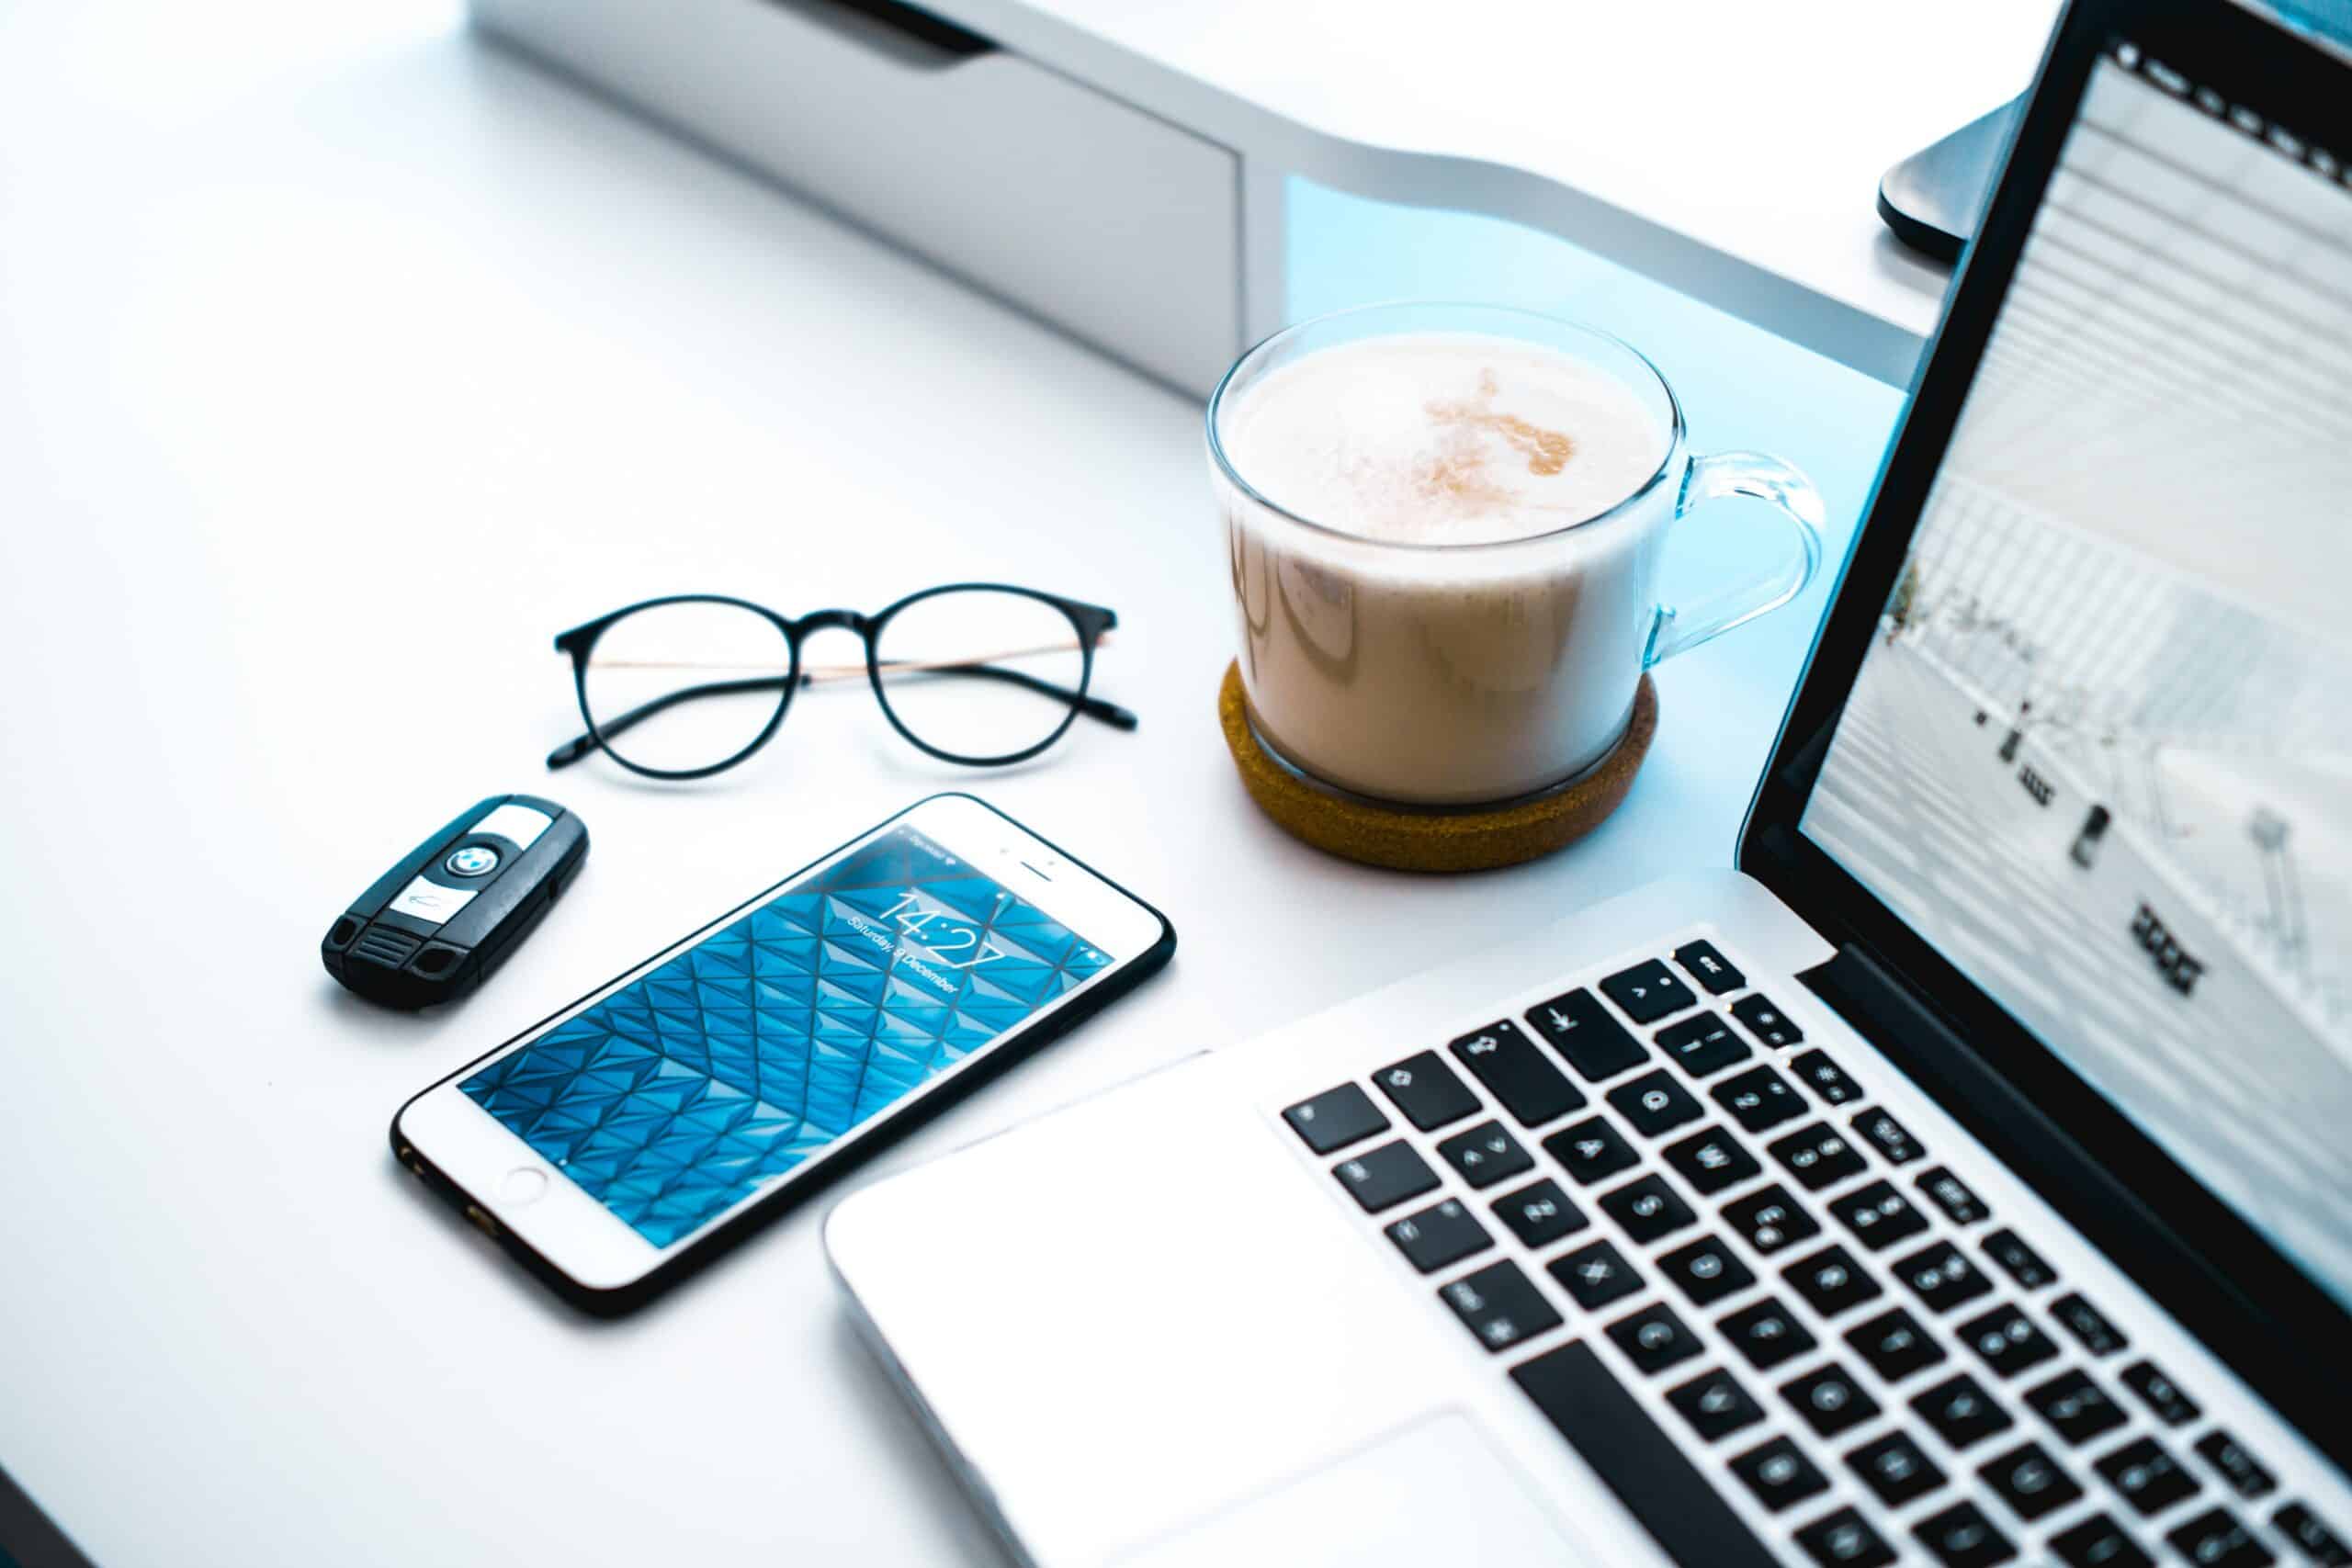 mesa de trabalho branca com um óculos feminino, um chave de carro, um celular iphone, uma xícara trabsparente com capuccino e um computador